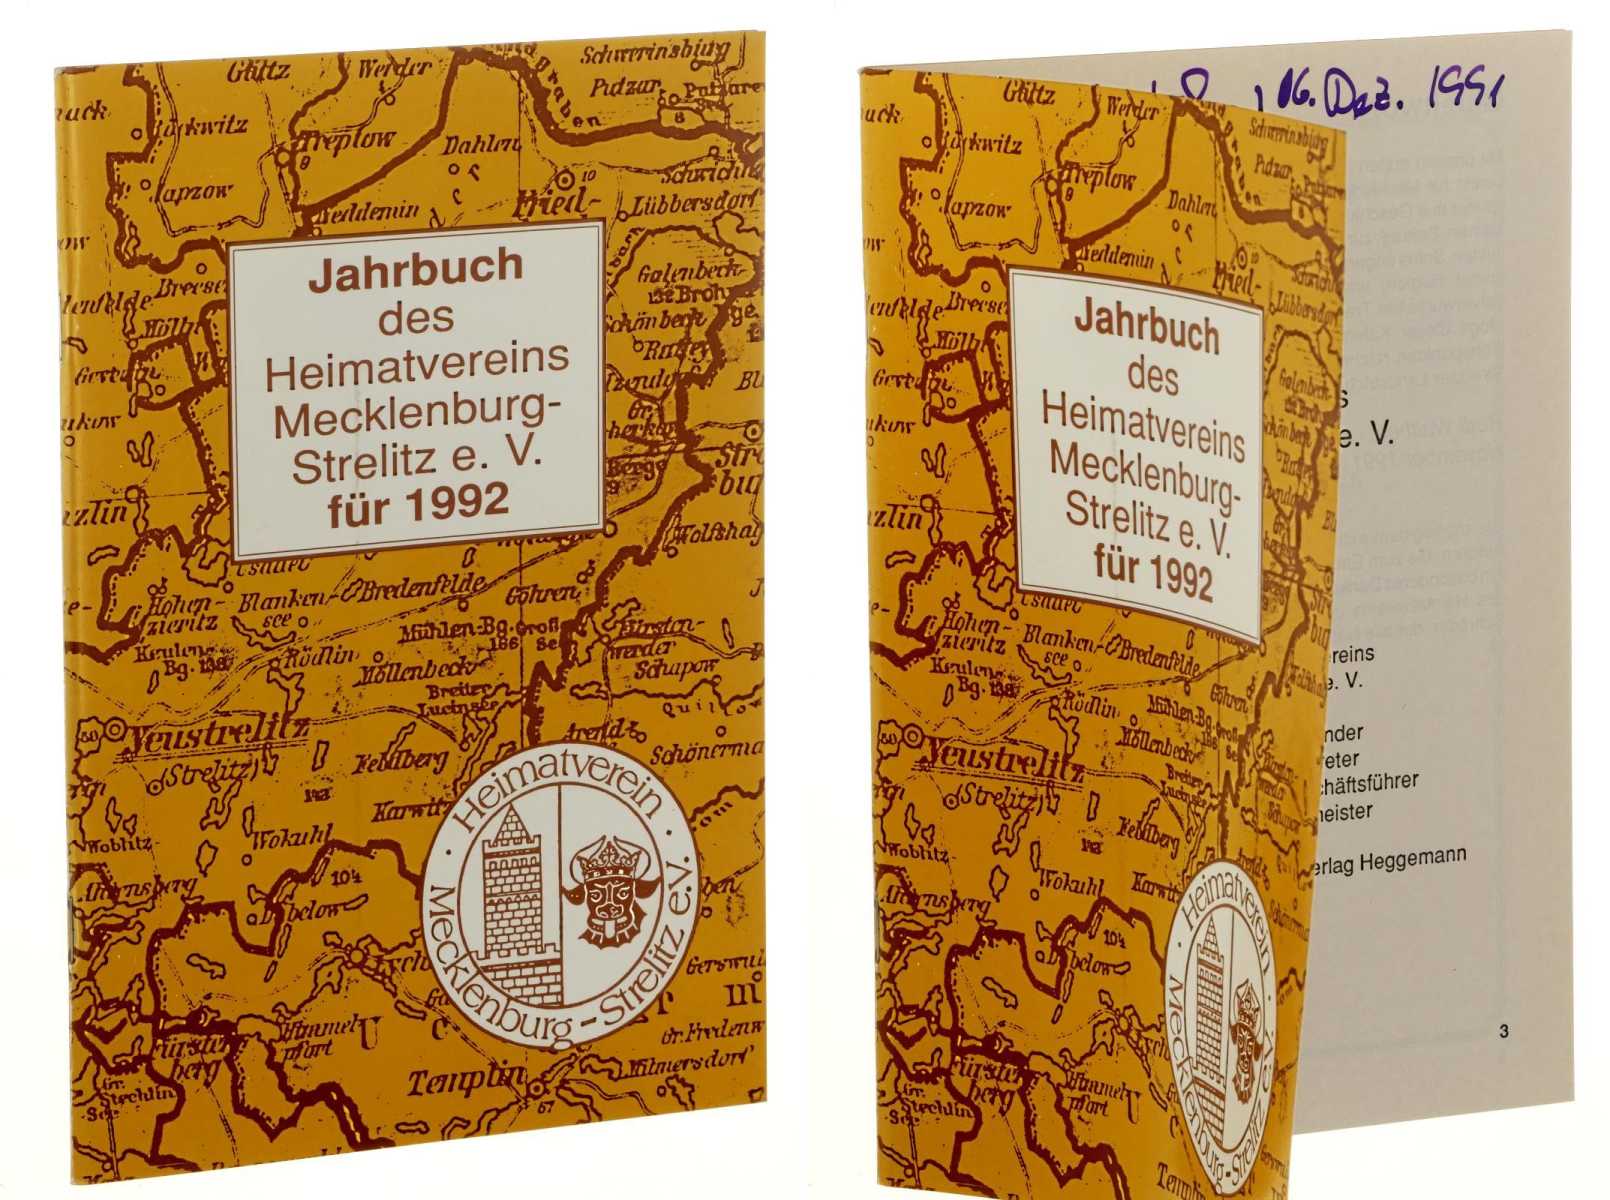   Jahrbuch des Heimatvereins Mecklenburg-Strelitz e.V. für 1992. 